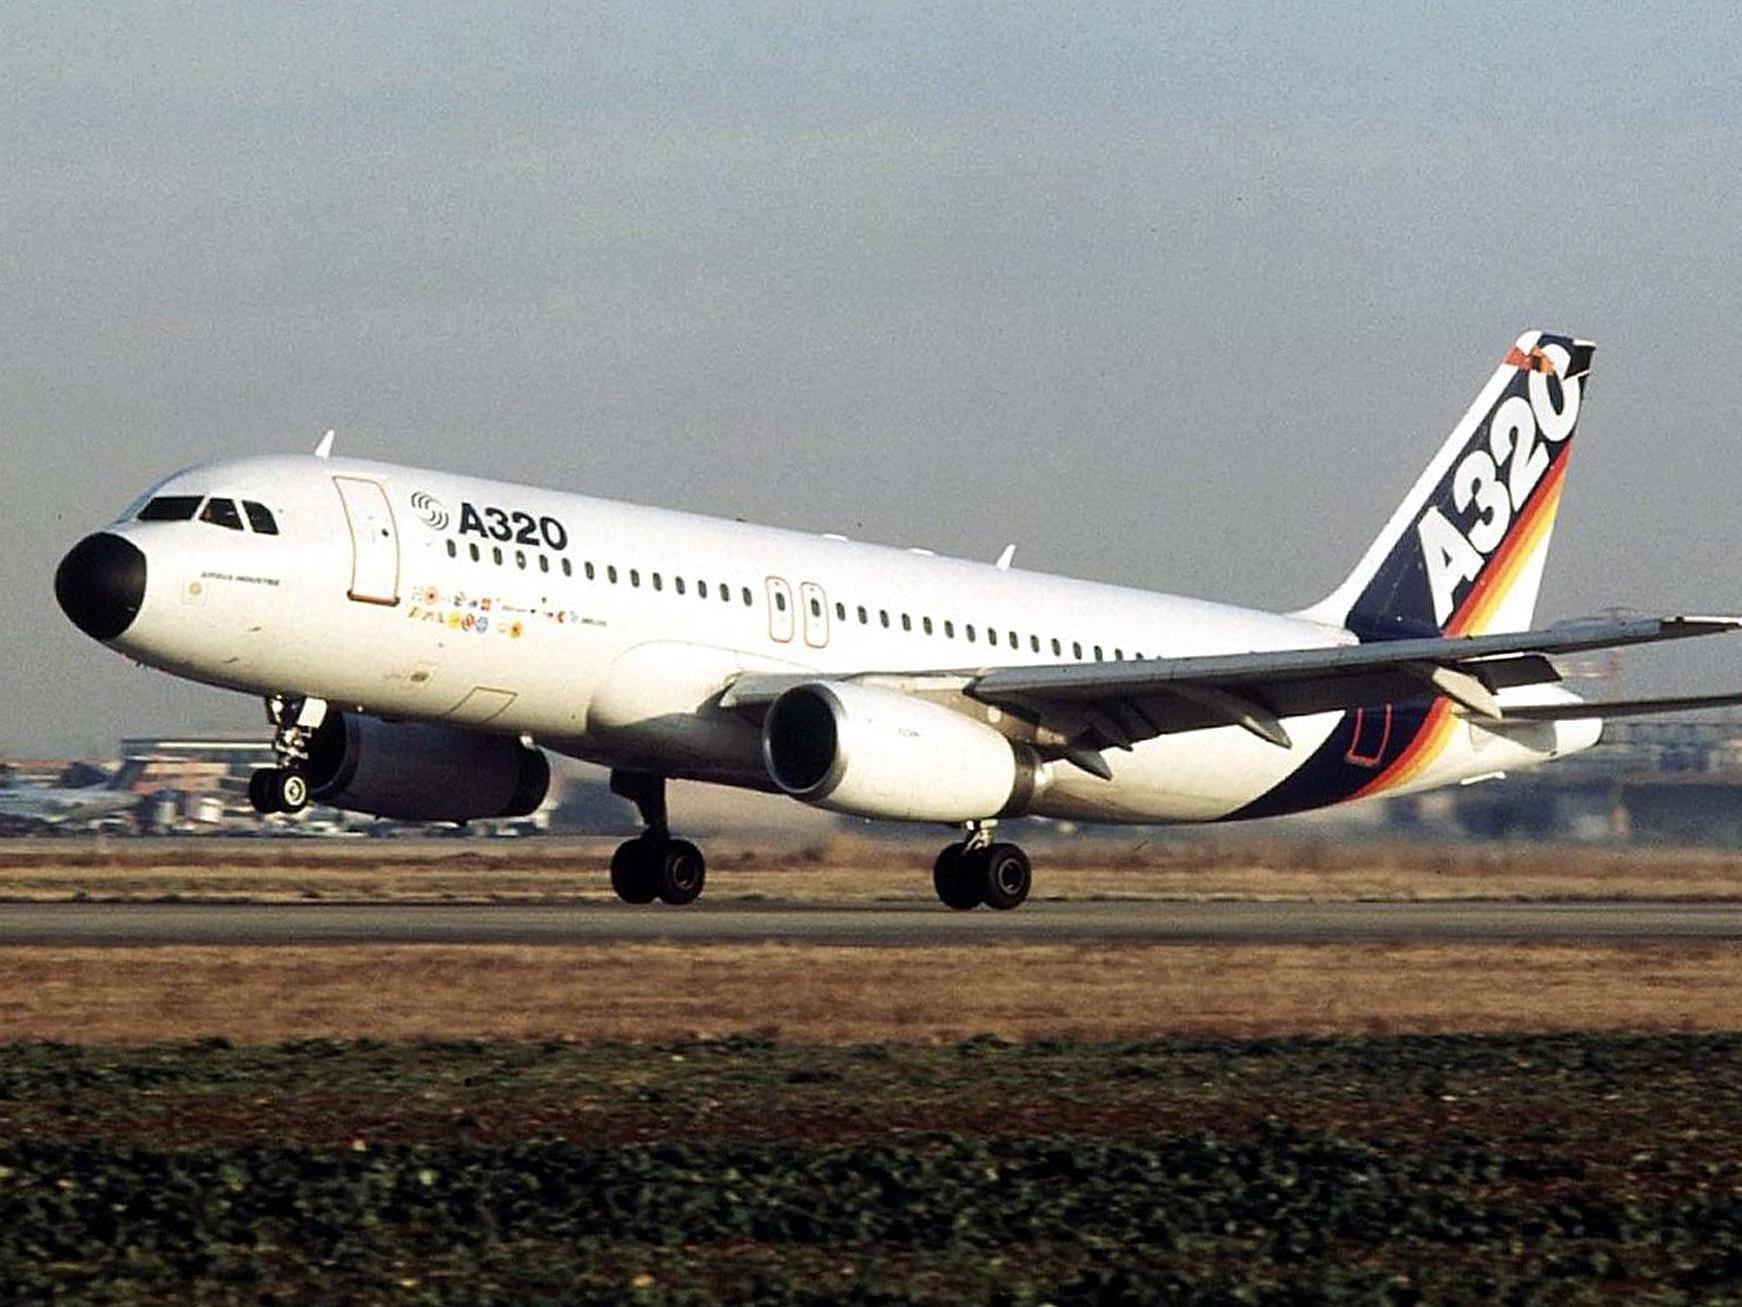 Der aktulle Zwischenfall ist nicht der erste der Airbus-Familie.